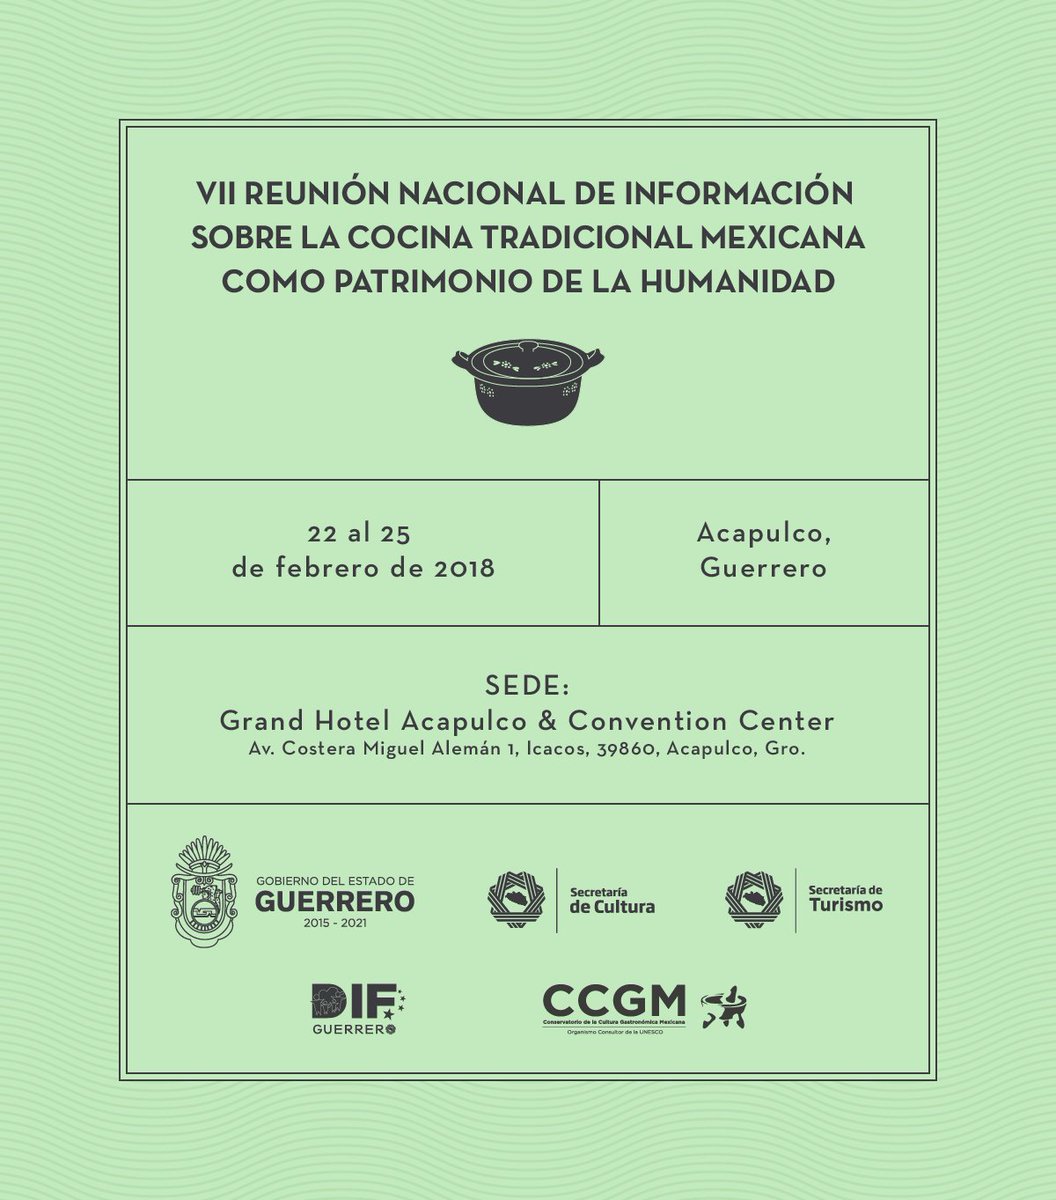 En la VII Reunión Nacional de Información de la #CocinaTradicionalMexicana se conocerán los avances en el Rescate, Salvaguardia y Promoción de este Patrimonio de la Humanidad. Del 22 al 25 de febrero, Acapulco, Guerrero.